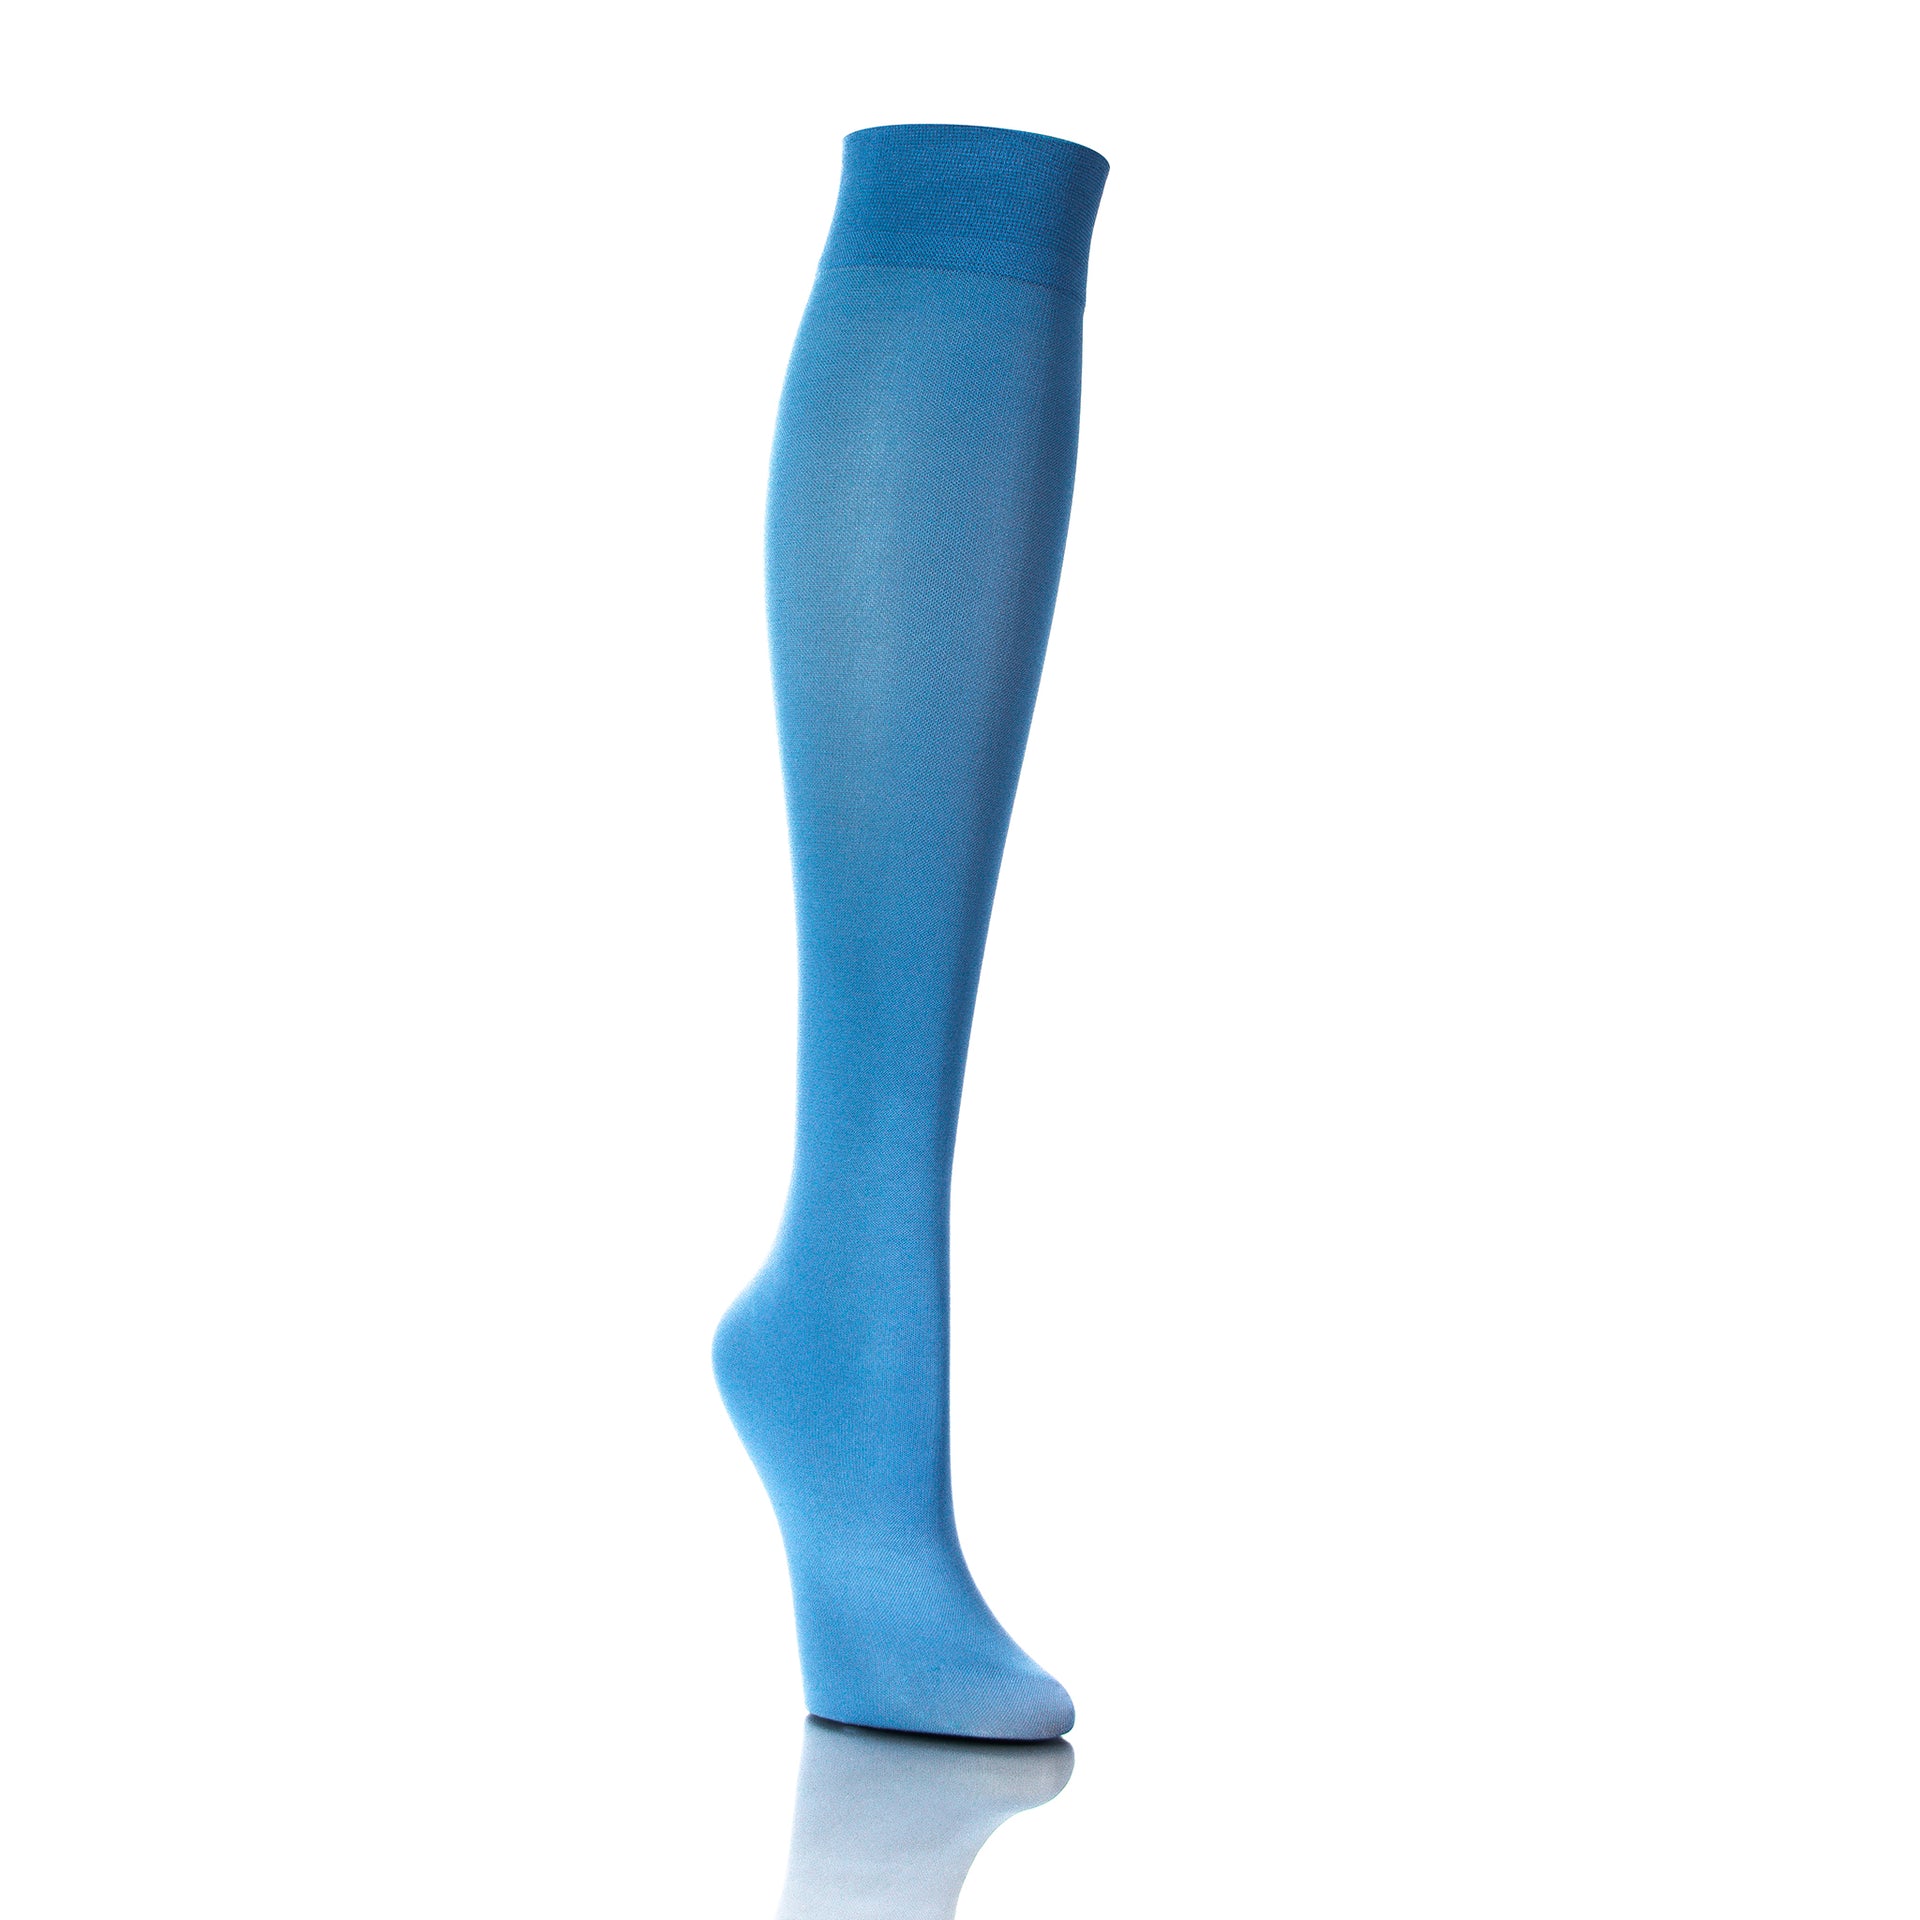 Bas de compression colorés 20-30 mmHg hauteur genou, bleu ciel, vue en diagonale, élégance fonctionnelle - Softmedi